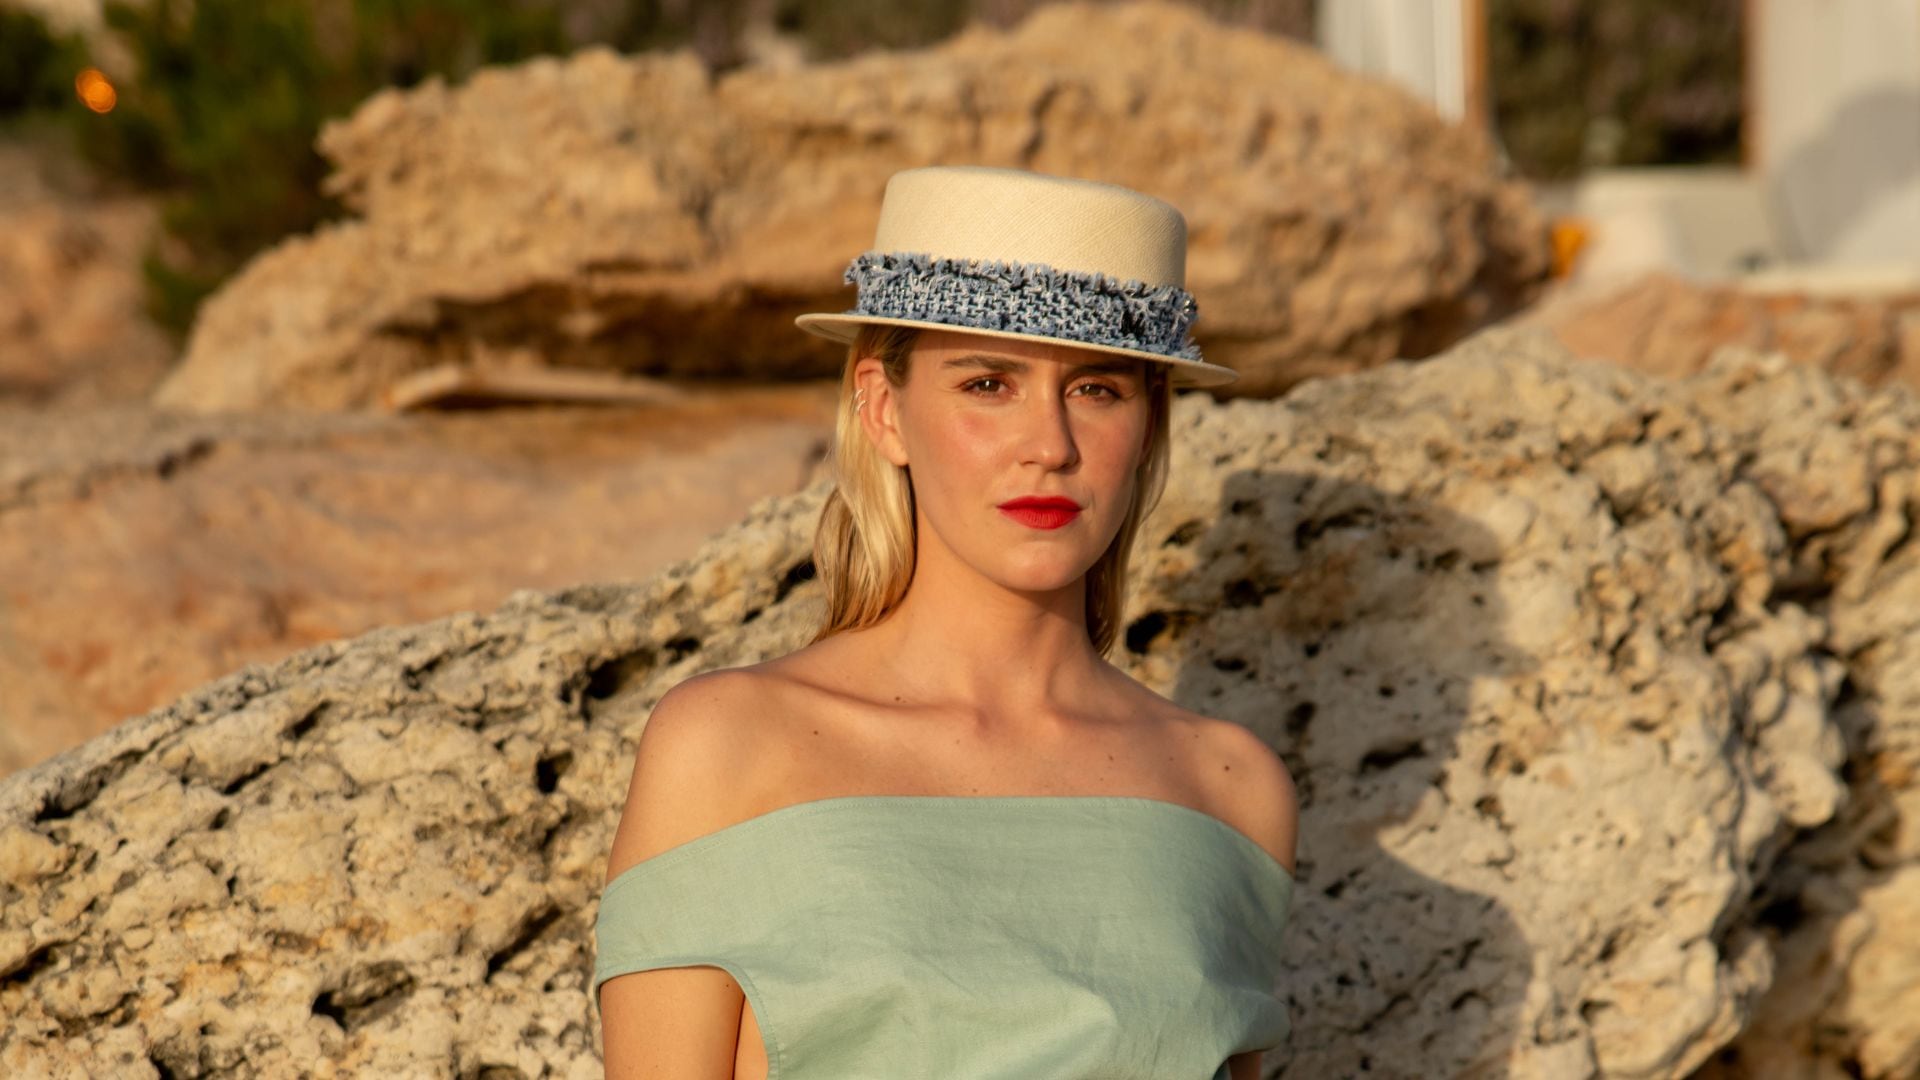 Hablamos con la influencer Mónica Anoz de sus planes favoritos en Ibiza: ‘ Estar con mi familia en el mar, comerme unas sardinas y ver el atardecer’